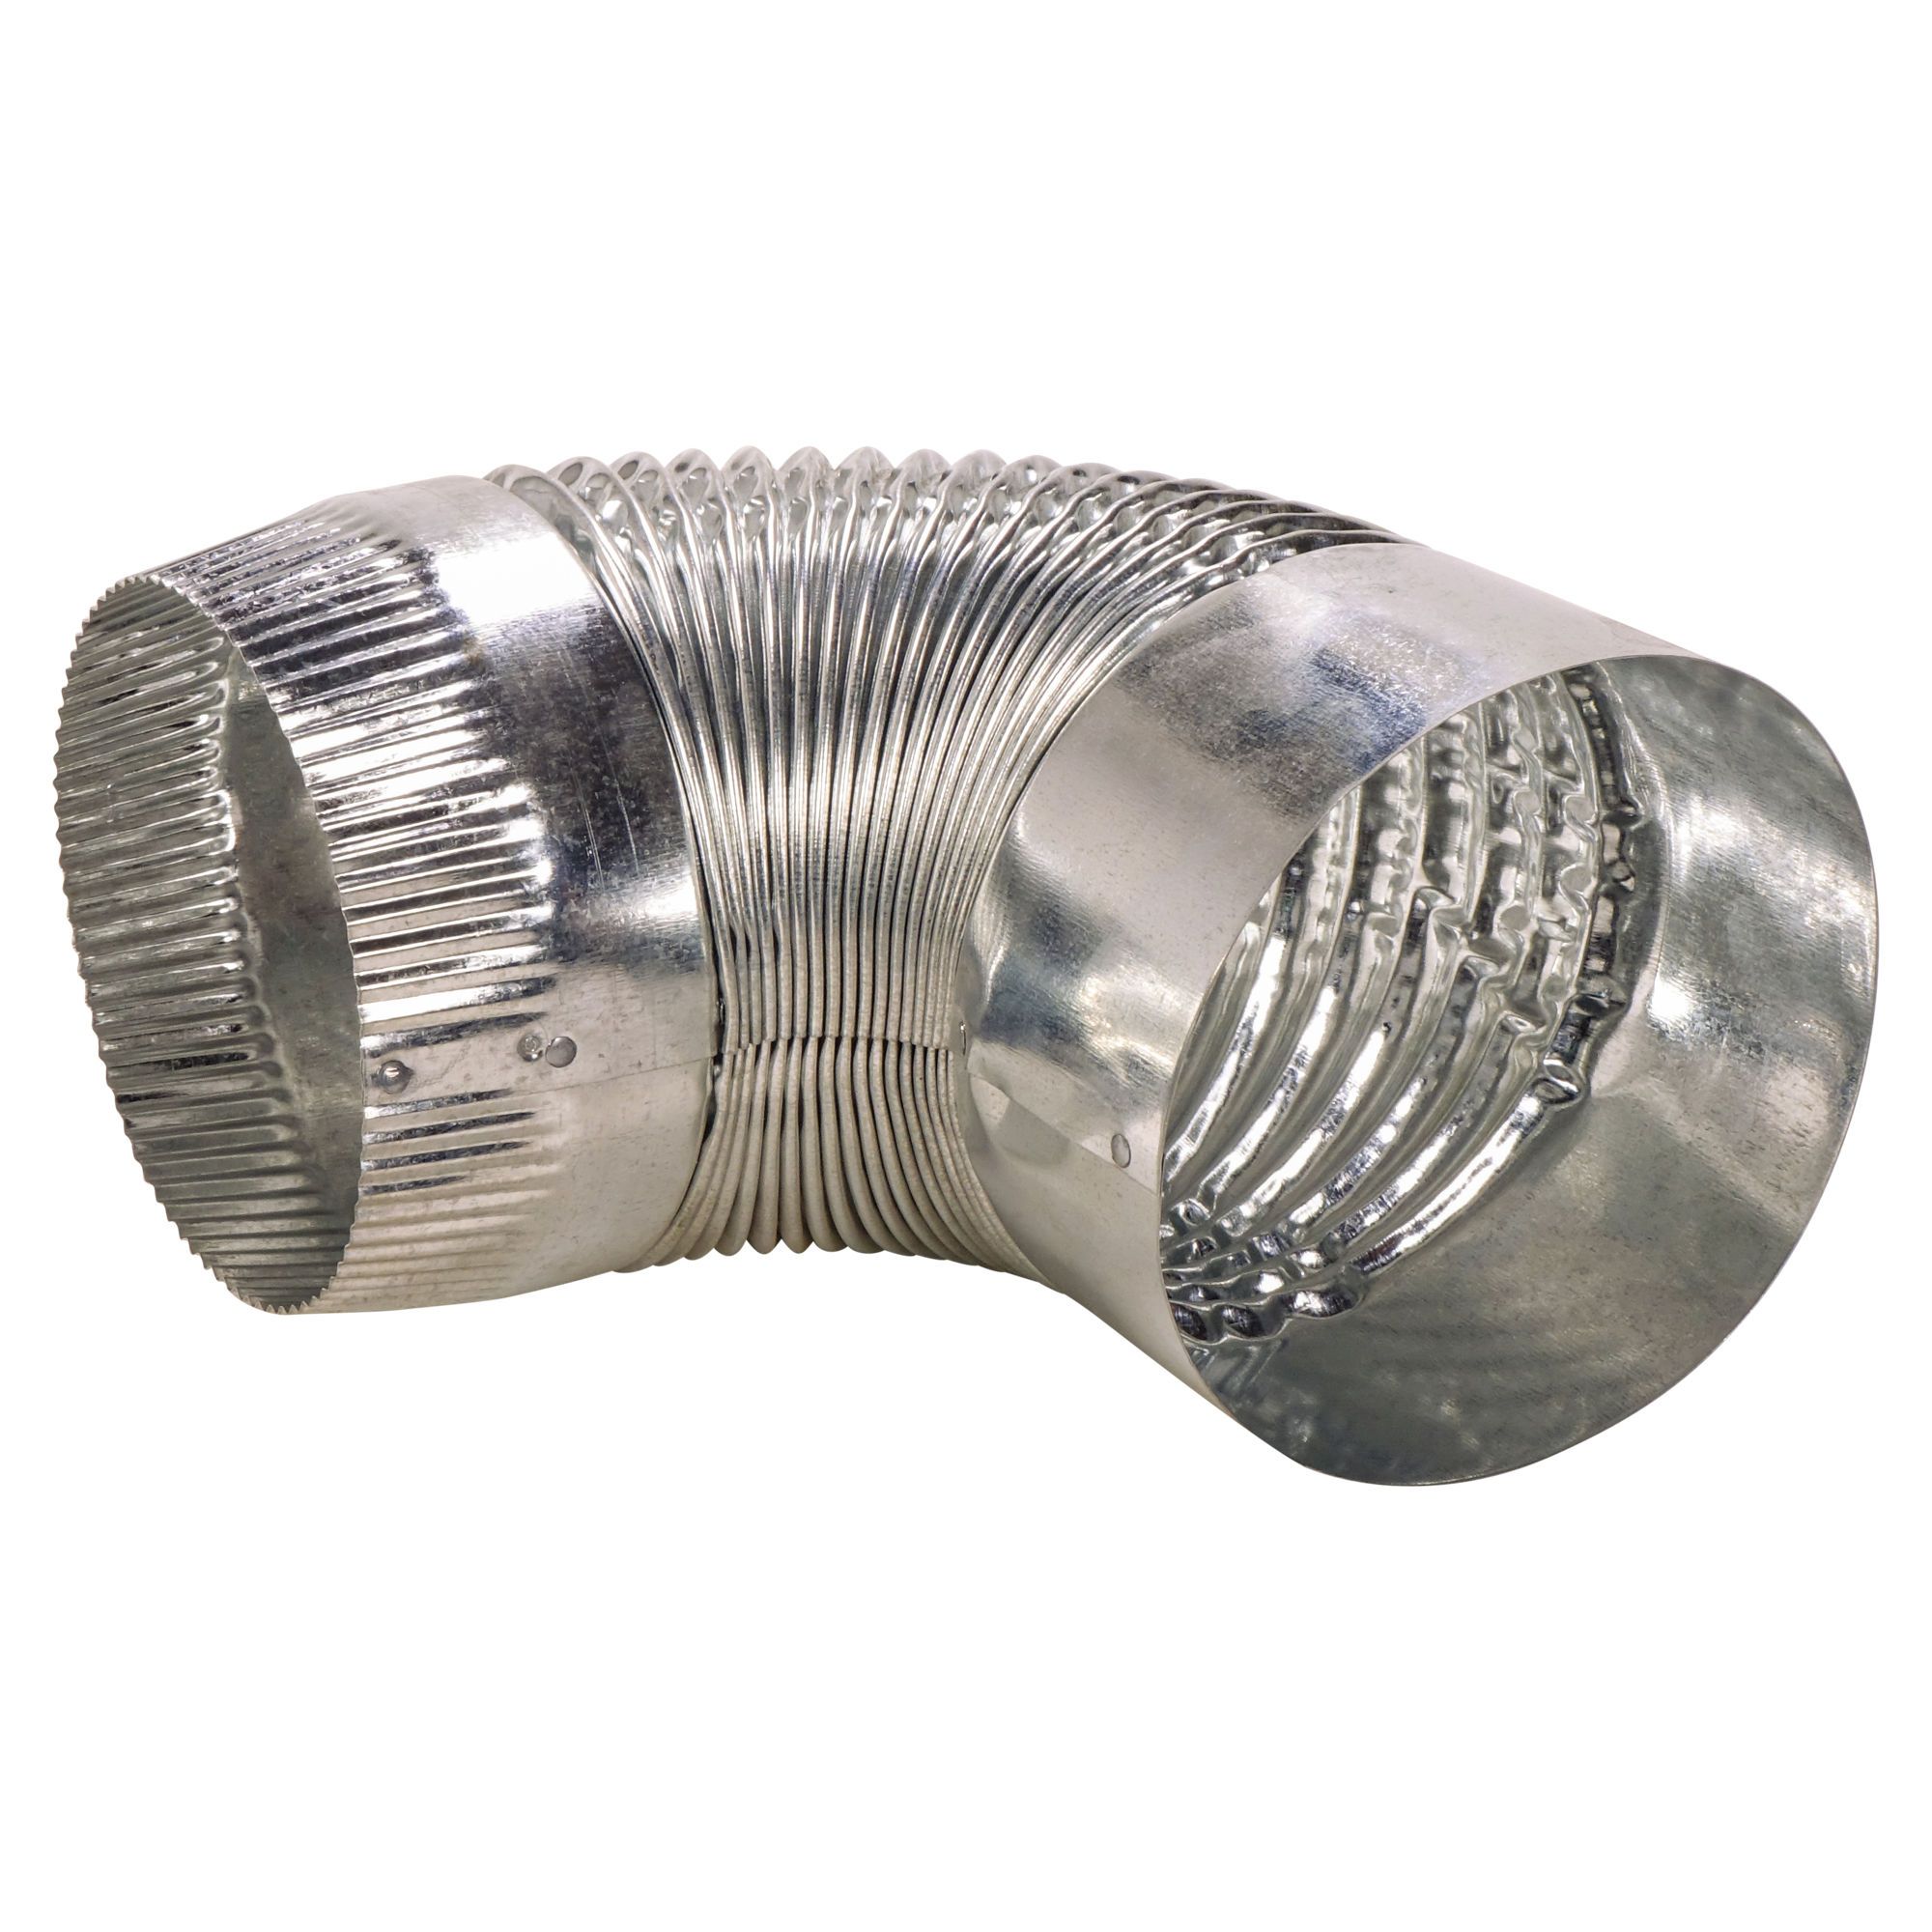 Tuyau d'aération de séchage, conduit flexible isolé de 15,2 cm, 2,4 m avec  2 colliers de serrage, protection robuste à trois couches pour ventilation